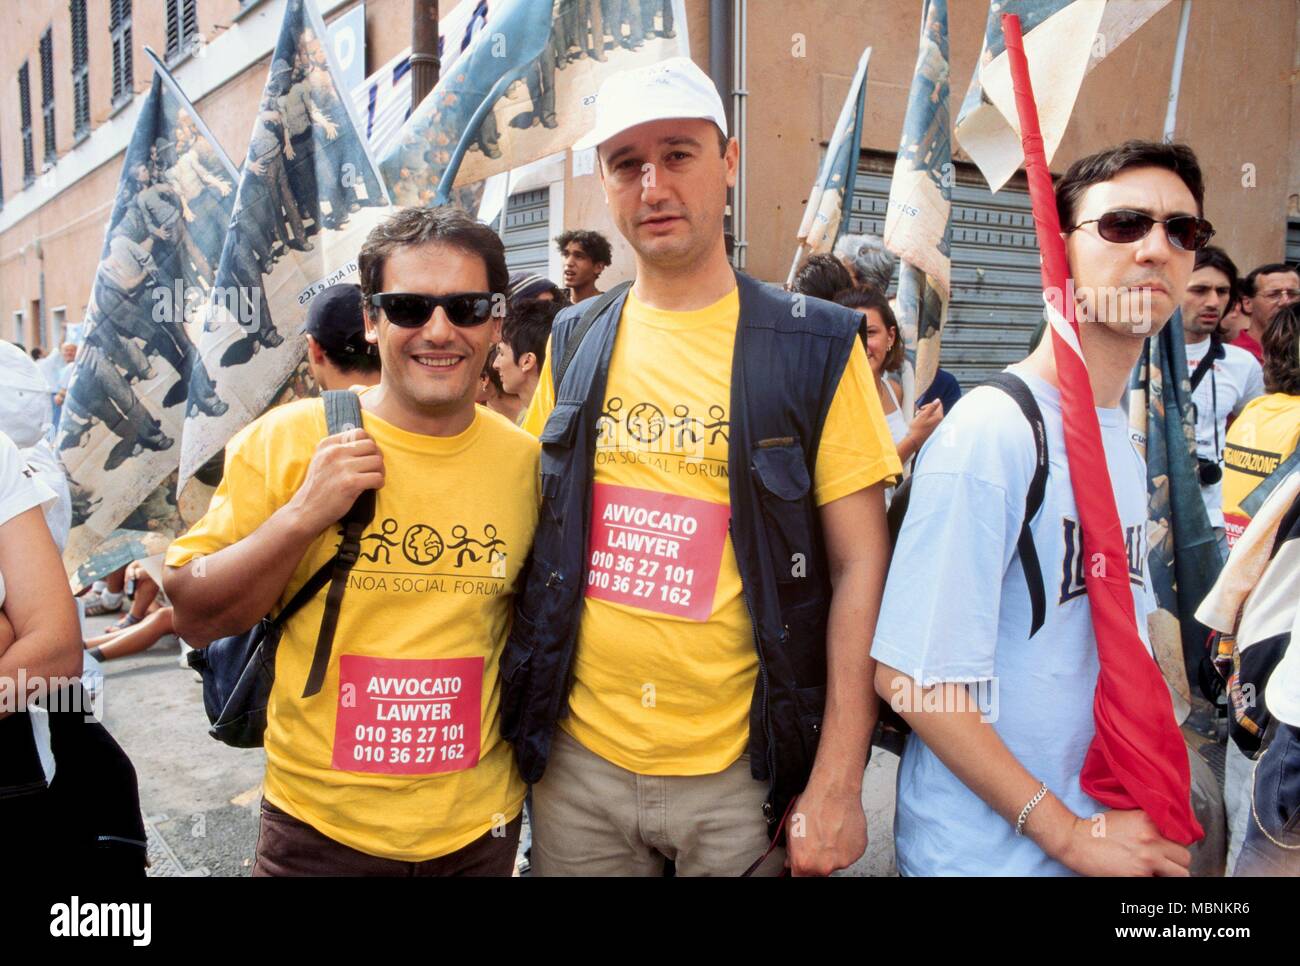 La protesta contro la international summit G8 di Genova (Italia), luglio 2001, Genoa Social Forum avvocati volontario Foto Stock